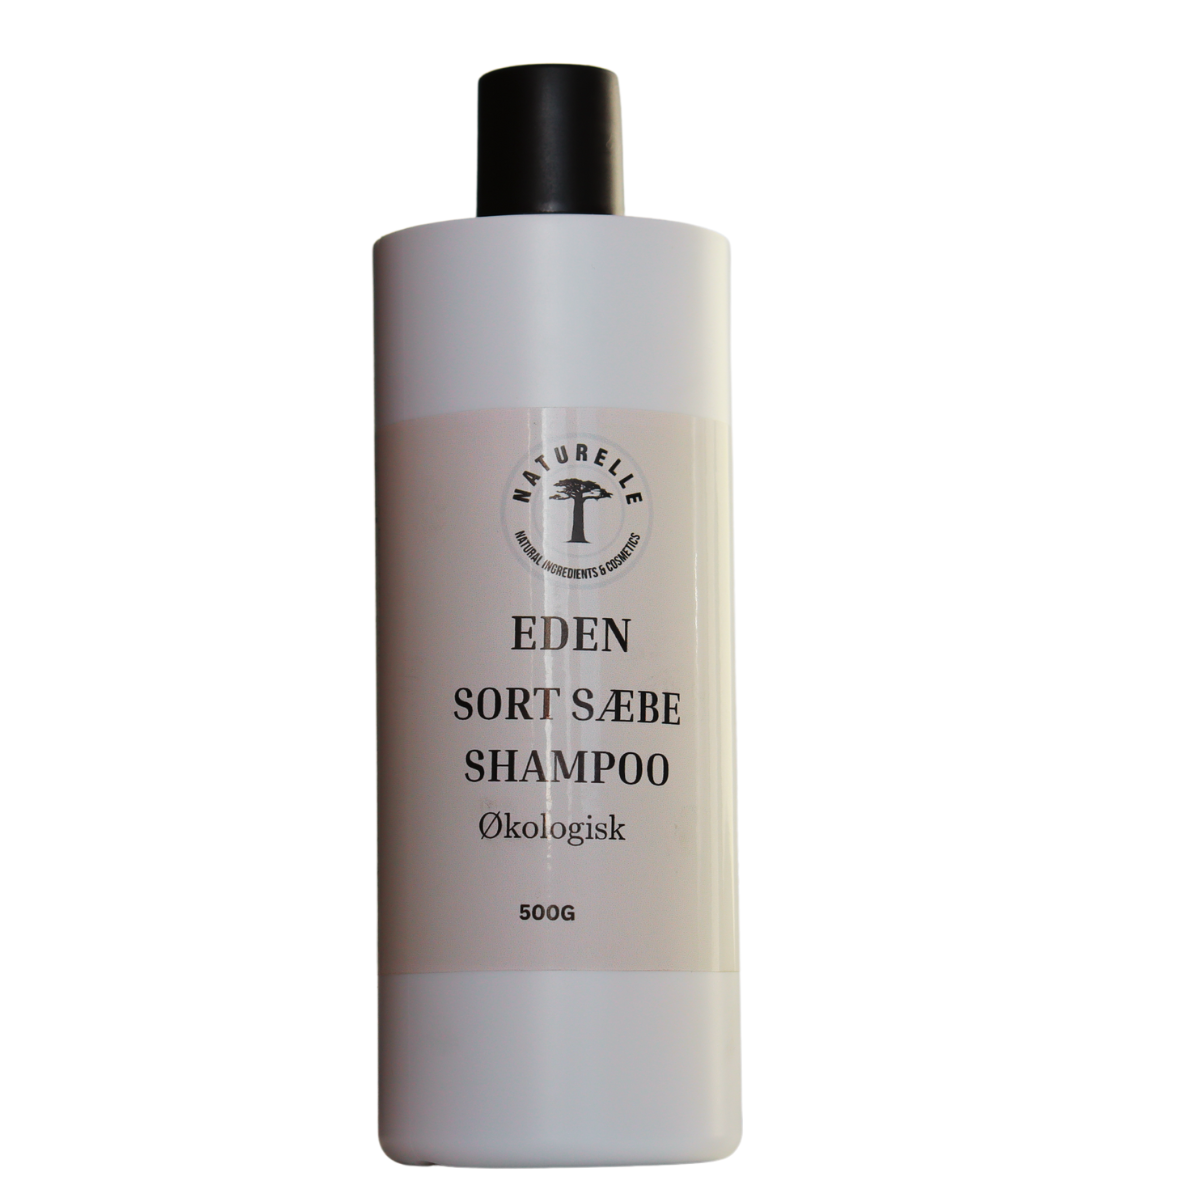 EDEN Sort sæbe shampoo - øko vegan 500ml